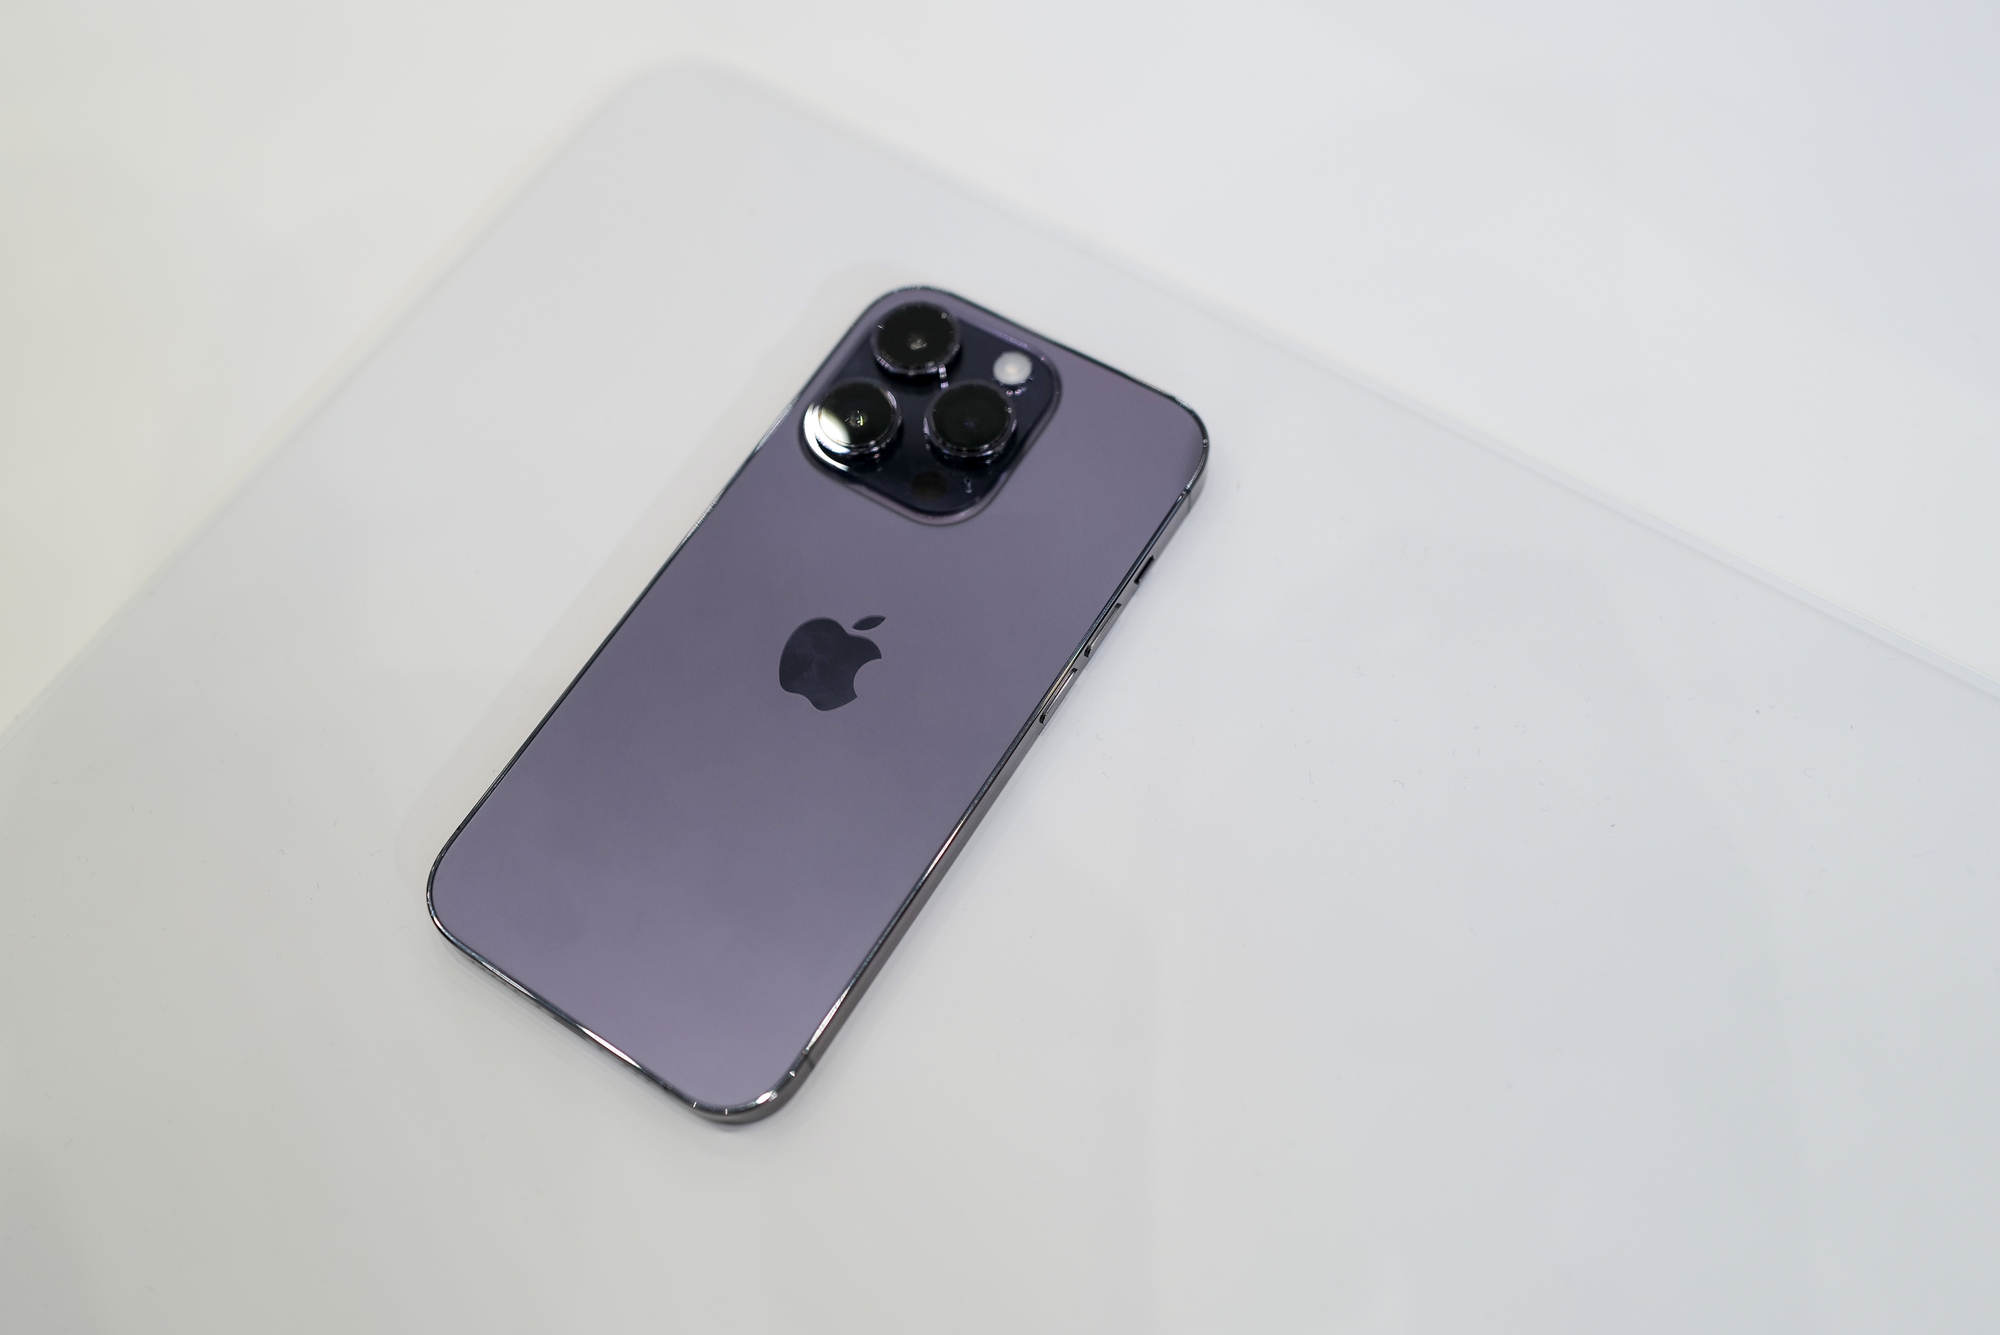 iPhone 14 Pro màu tím: Nếu bạn đam mê phong cách thời trang và muốn sở hữu một chiếc điện thoại sang trọng, hãy khám phá ngay màu tím đầy nổi bật trên chiếc iPhone 14 Pro. Với những tính năng vượt trội và kiểu dáng độc đáo, iPhone 14 Pro chắc chắn sẽ khiến bạn phát cuồng!